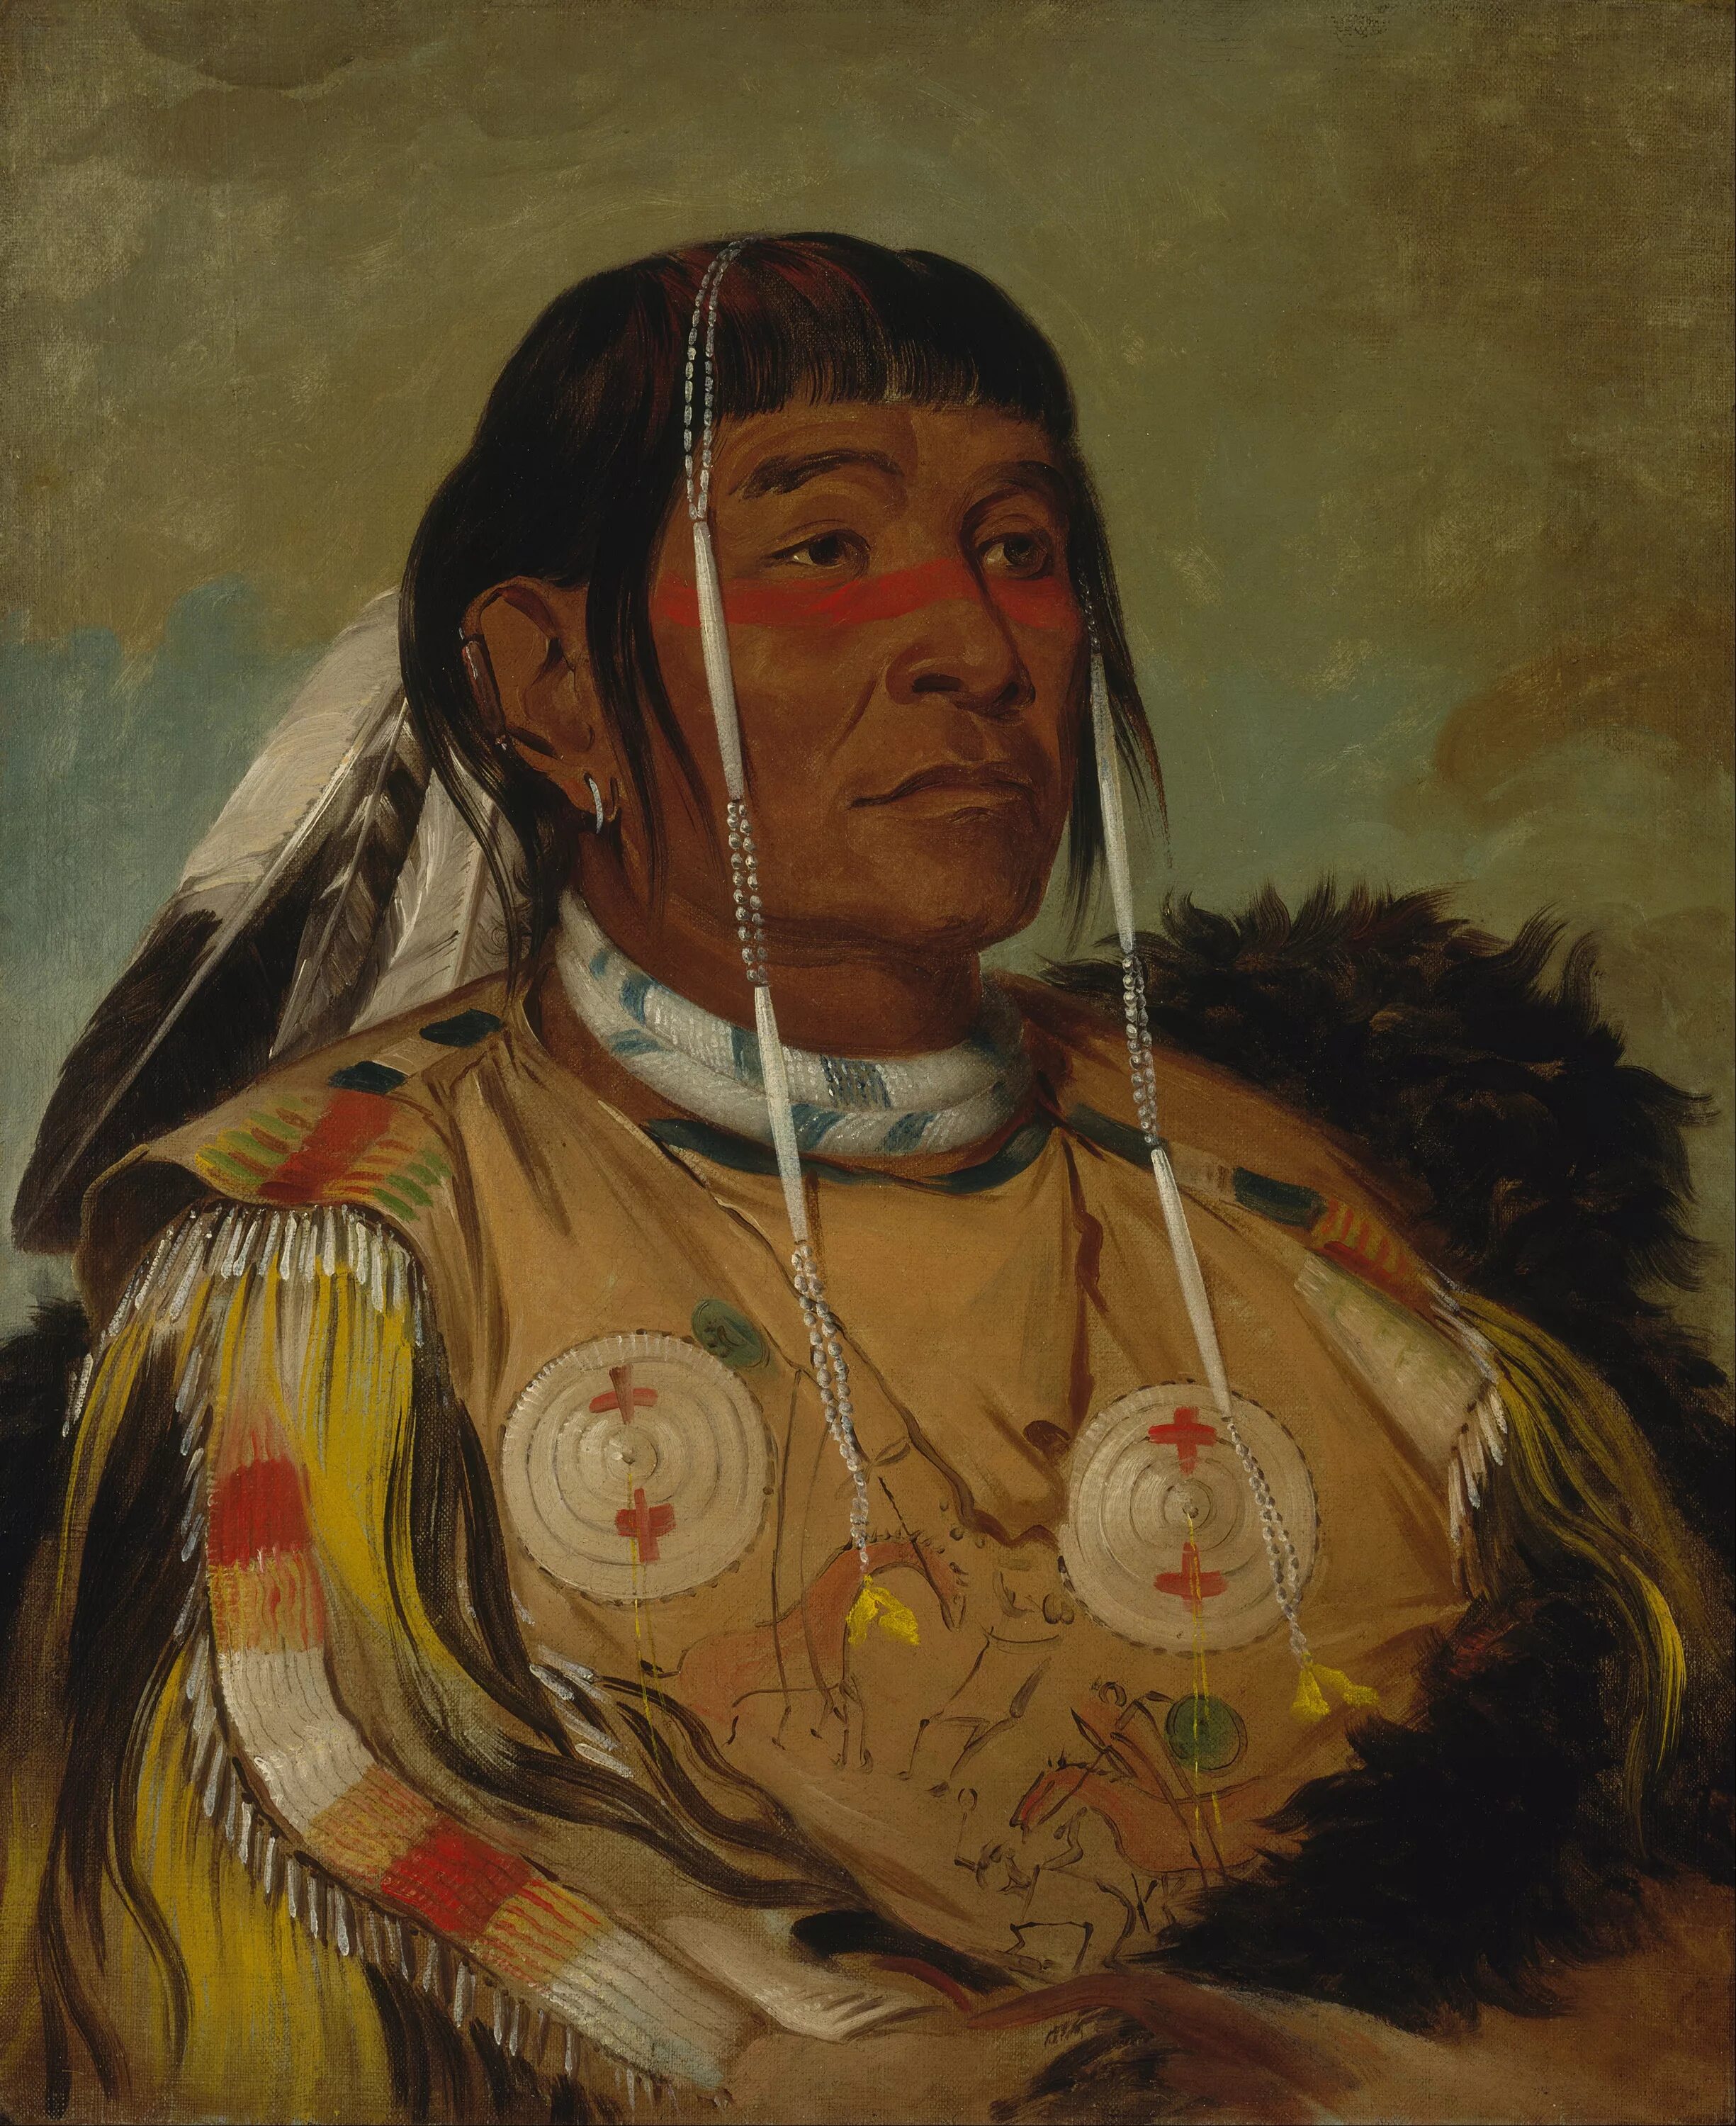 Джордж Кэтлин индейцы. Джордж Кэтлин Sha-có-pay, the Six, Chief of the Plains Ojibwa. Джордж Кэтлин картины. Оджибве индейцы.